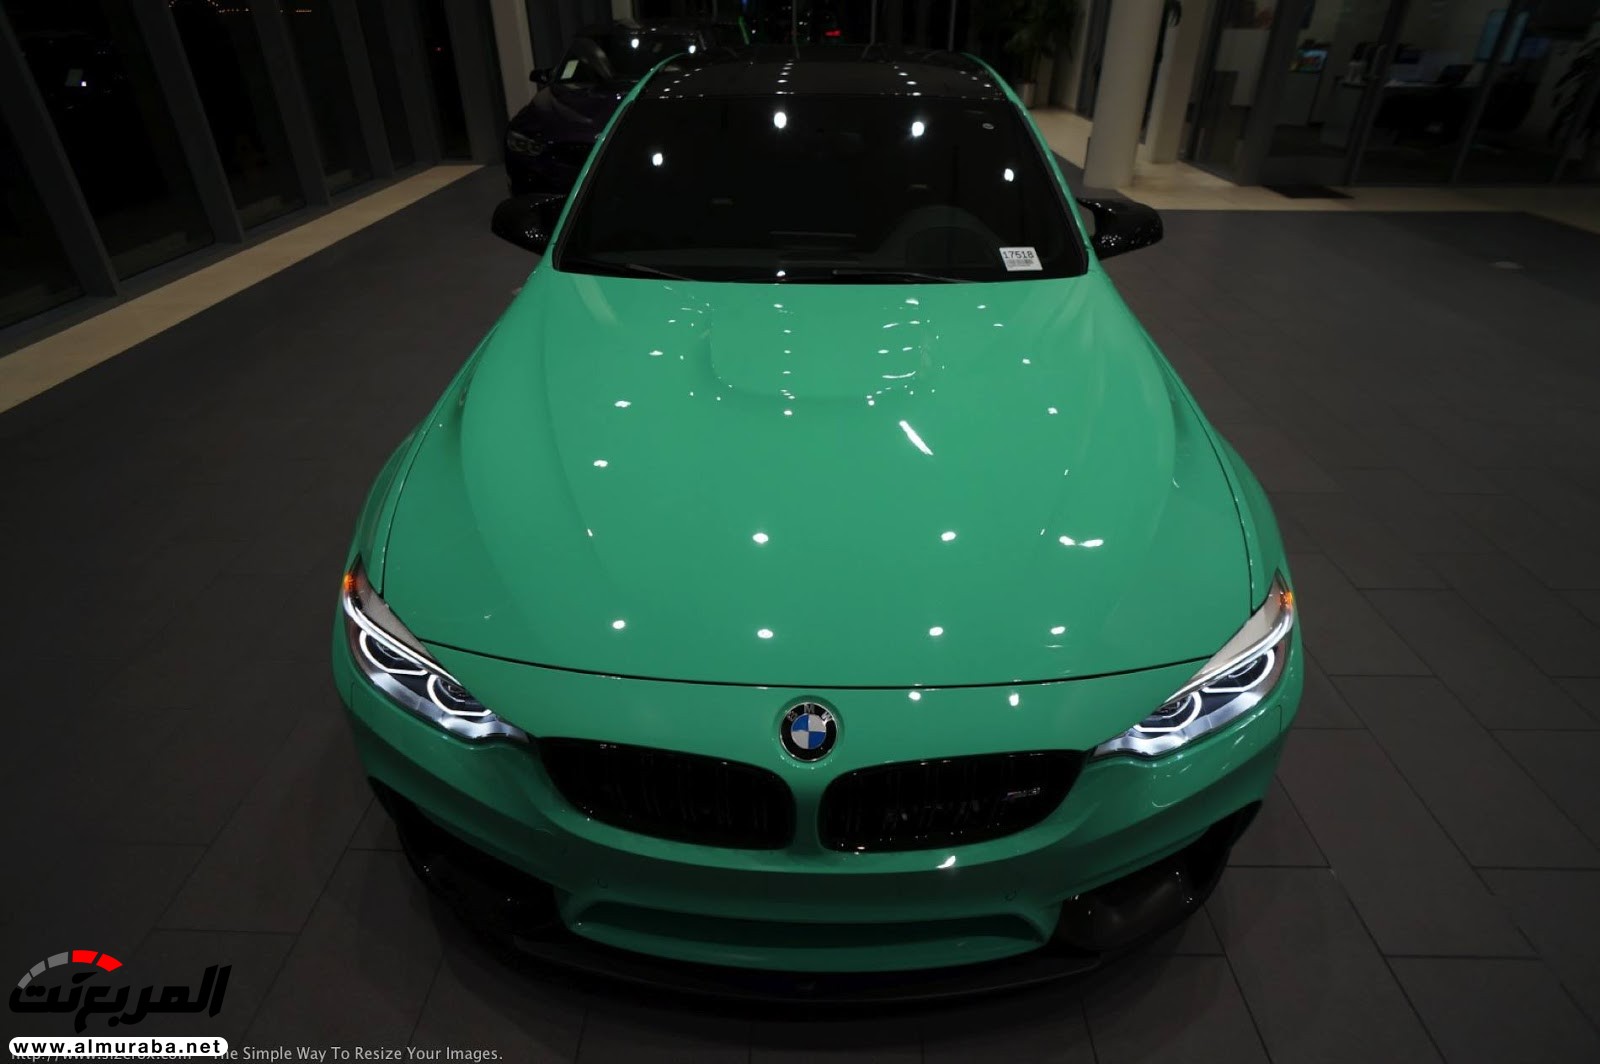 "بالصور" شاهد "بي إم دبليو" F80 M3 الخاصة بطلاء النعناع الأخضر BMW 116